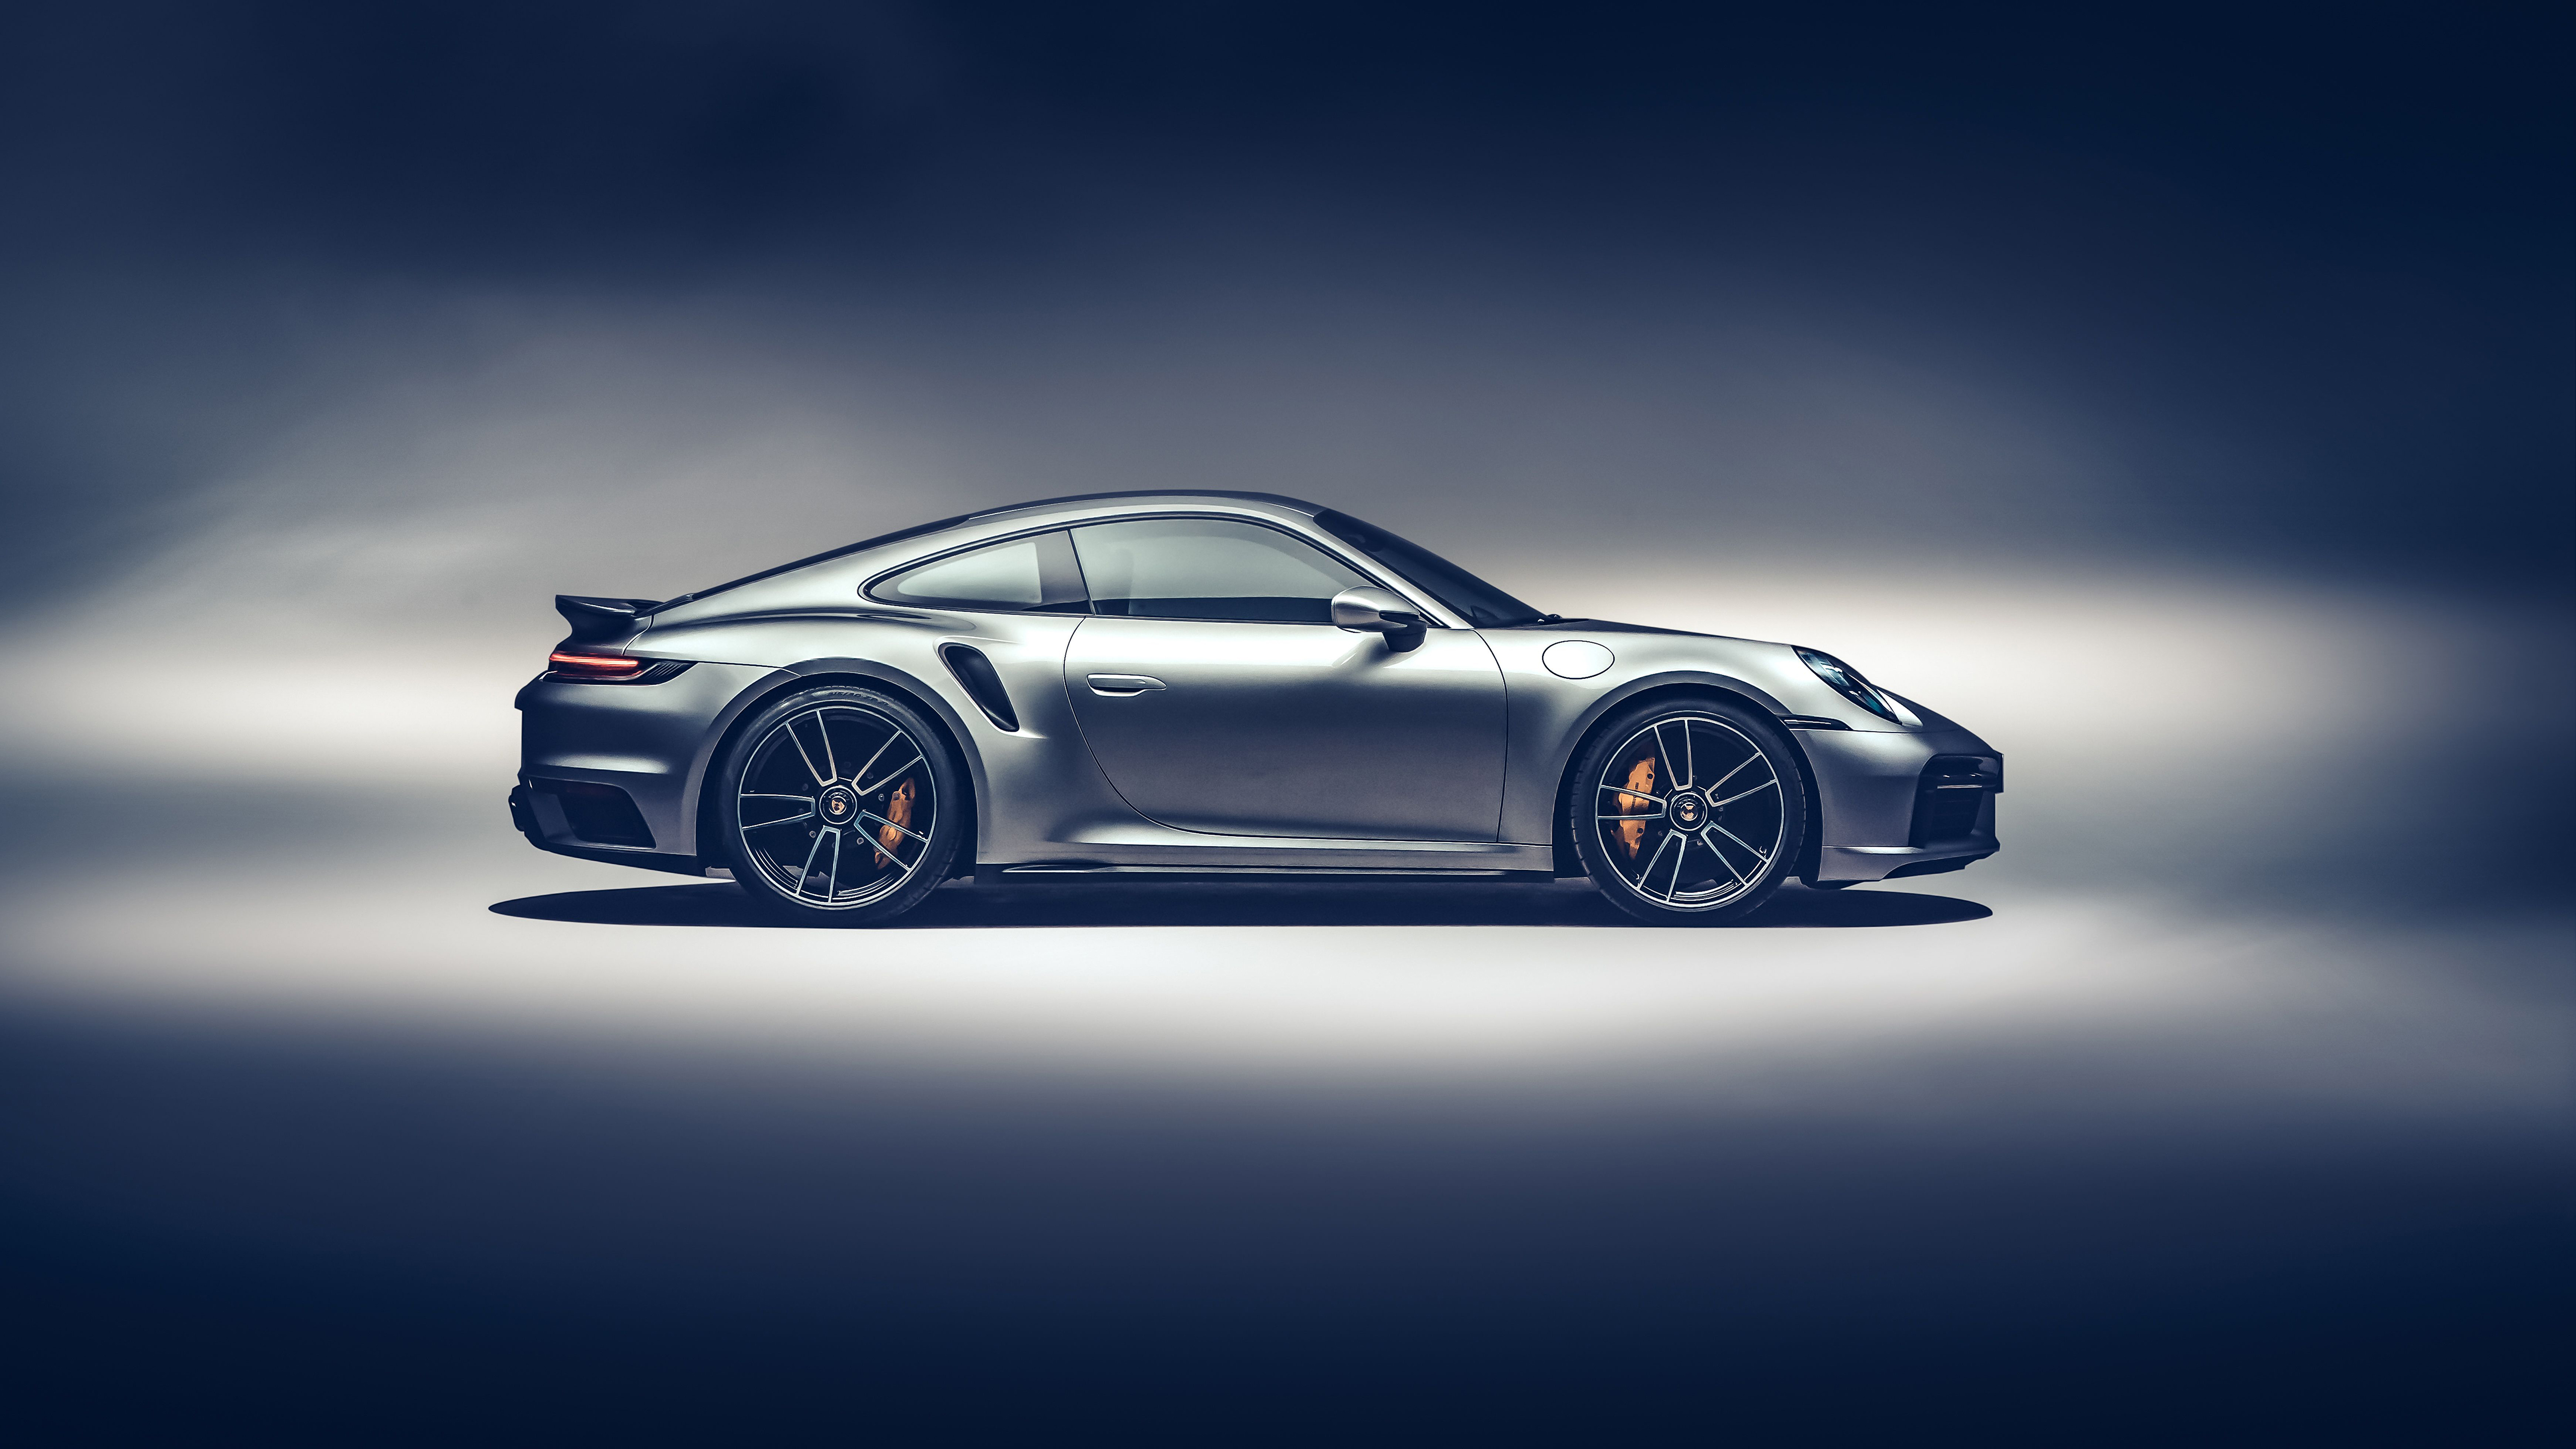 Xe Porsche 911 Turbo S là biểu tượng của sự sang trọng và tốc độ. Hãy chiêm ngưỡng hình ảnh siêu xe này với động cơ mạnh mẽ và thiết kế tuyệt đẹp.